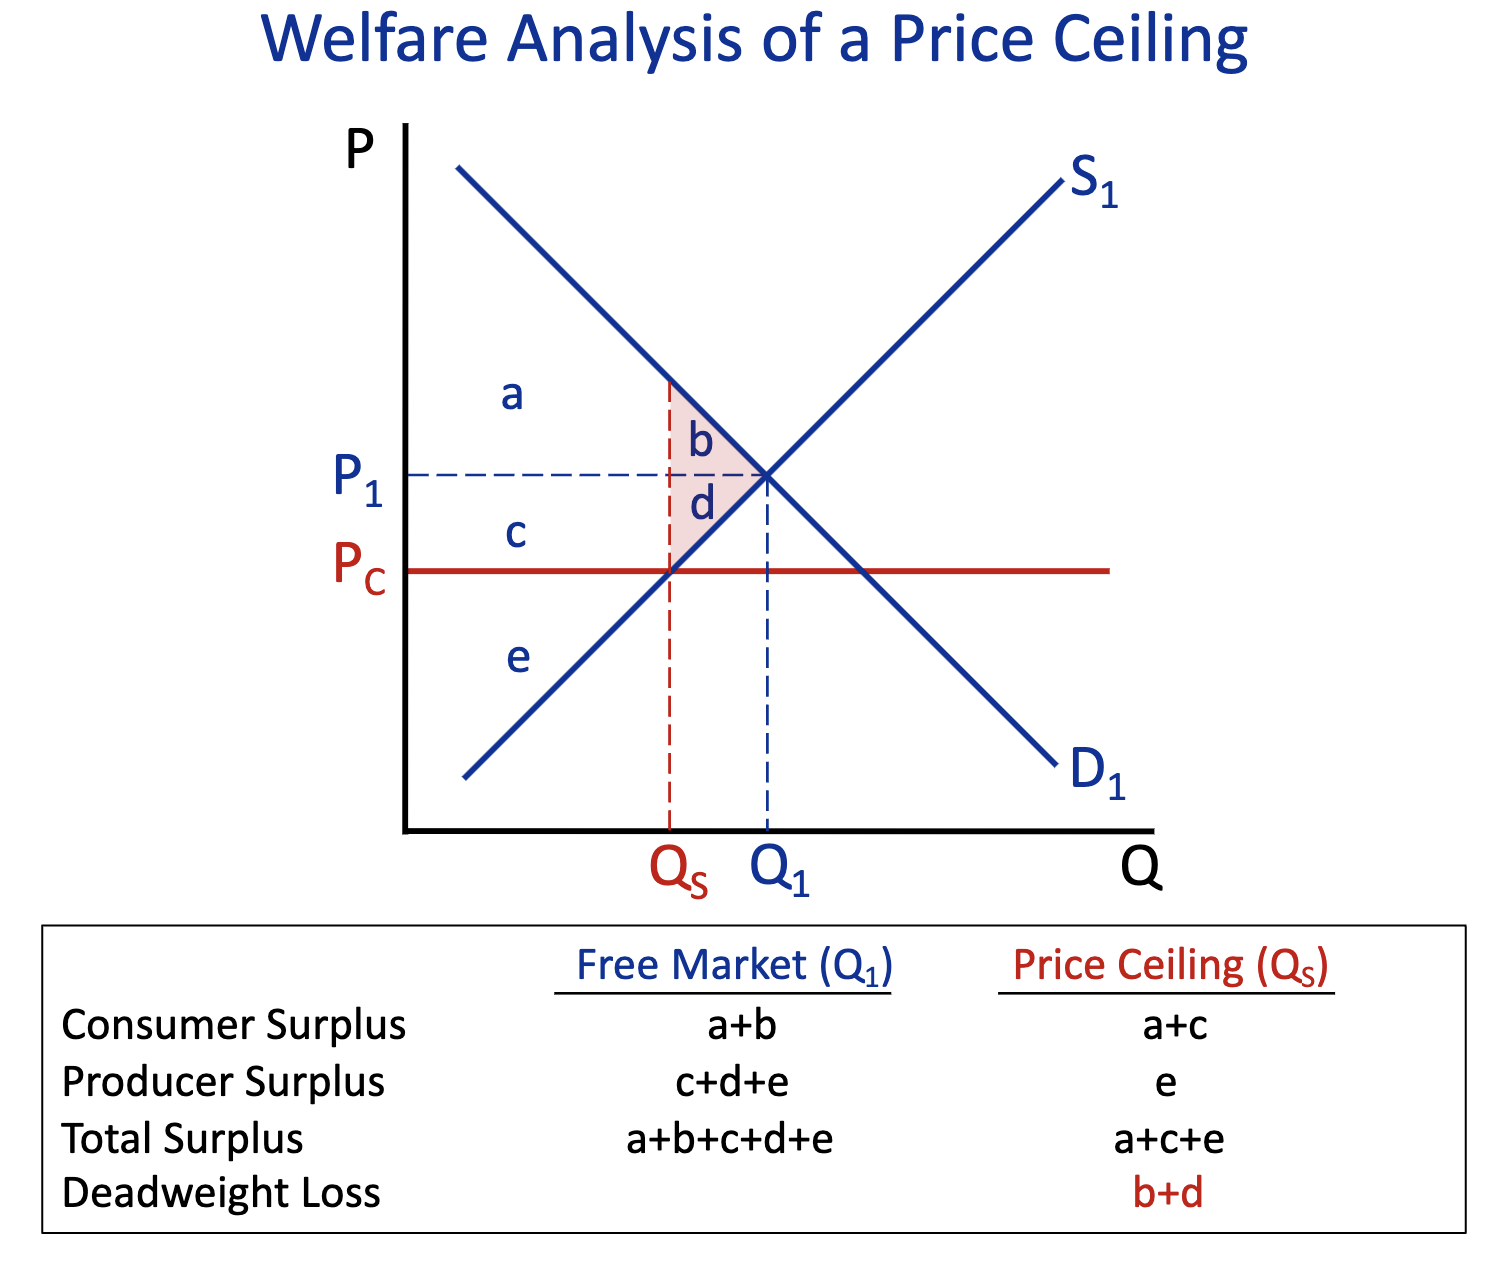 <p>Free Market (Q1) : </p><p>Price Ceiling (Q2) : b+d</p>